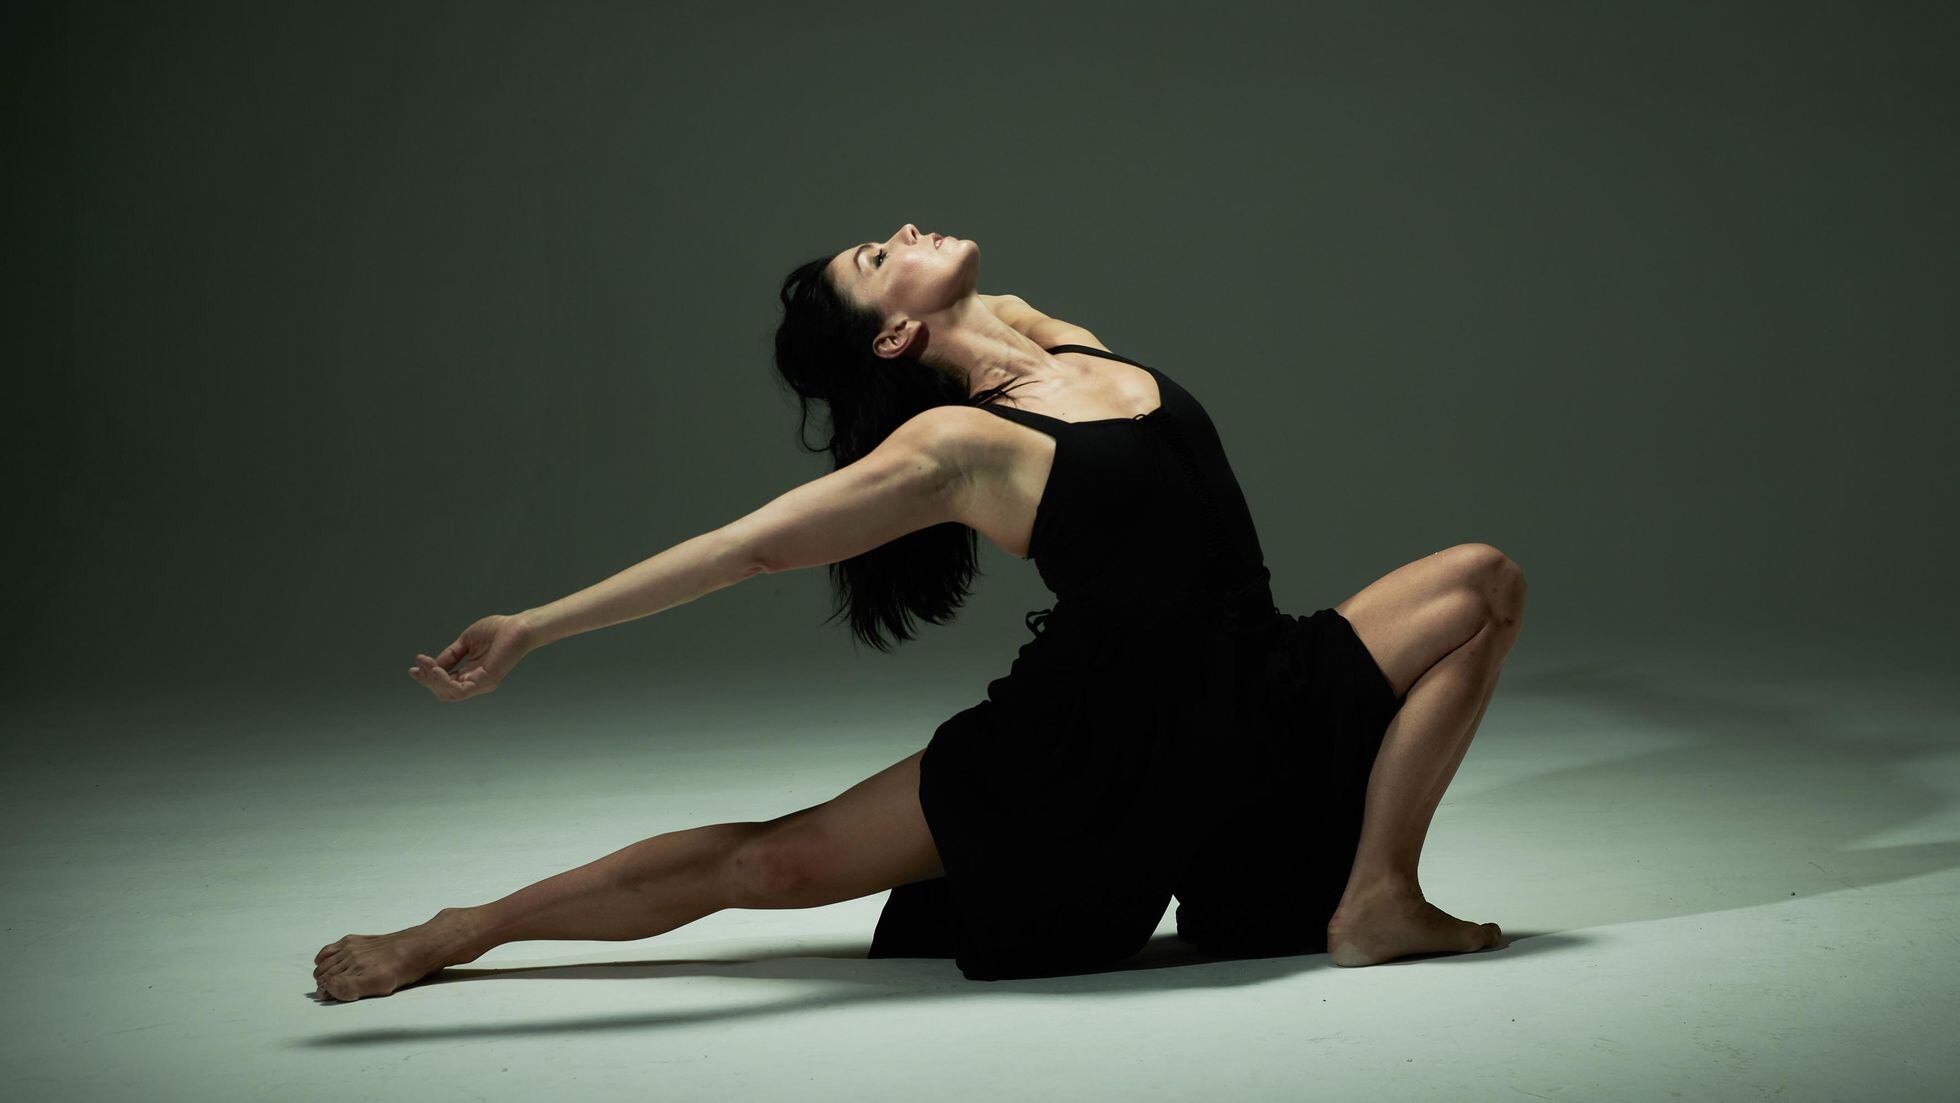 Las mejores puntas de ballet las puedes encontrar leyendo este artículo